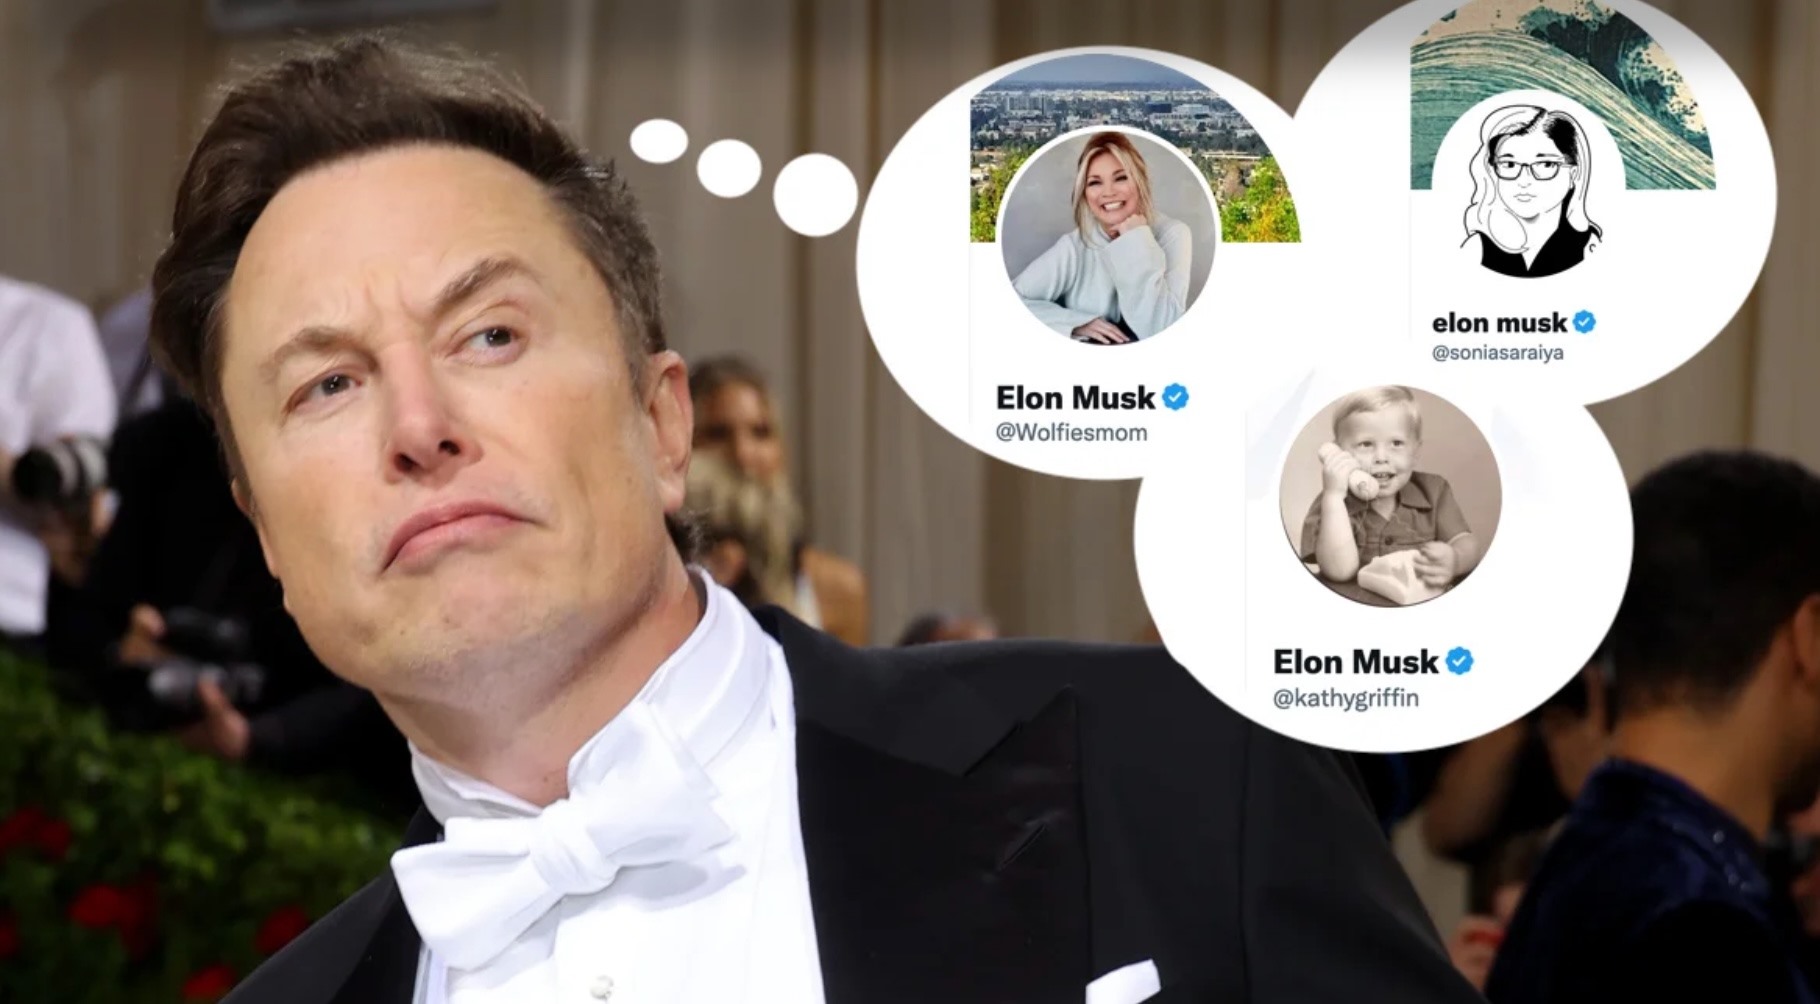 Nhiều người dùng đã đổi tên trên Twitter thành Elon Musk để “thử” khả năng xác minh của mạng xã hội này. Ảnh chụp màn hình